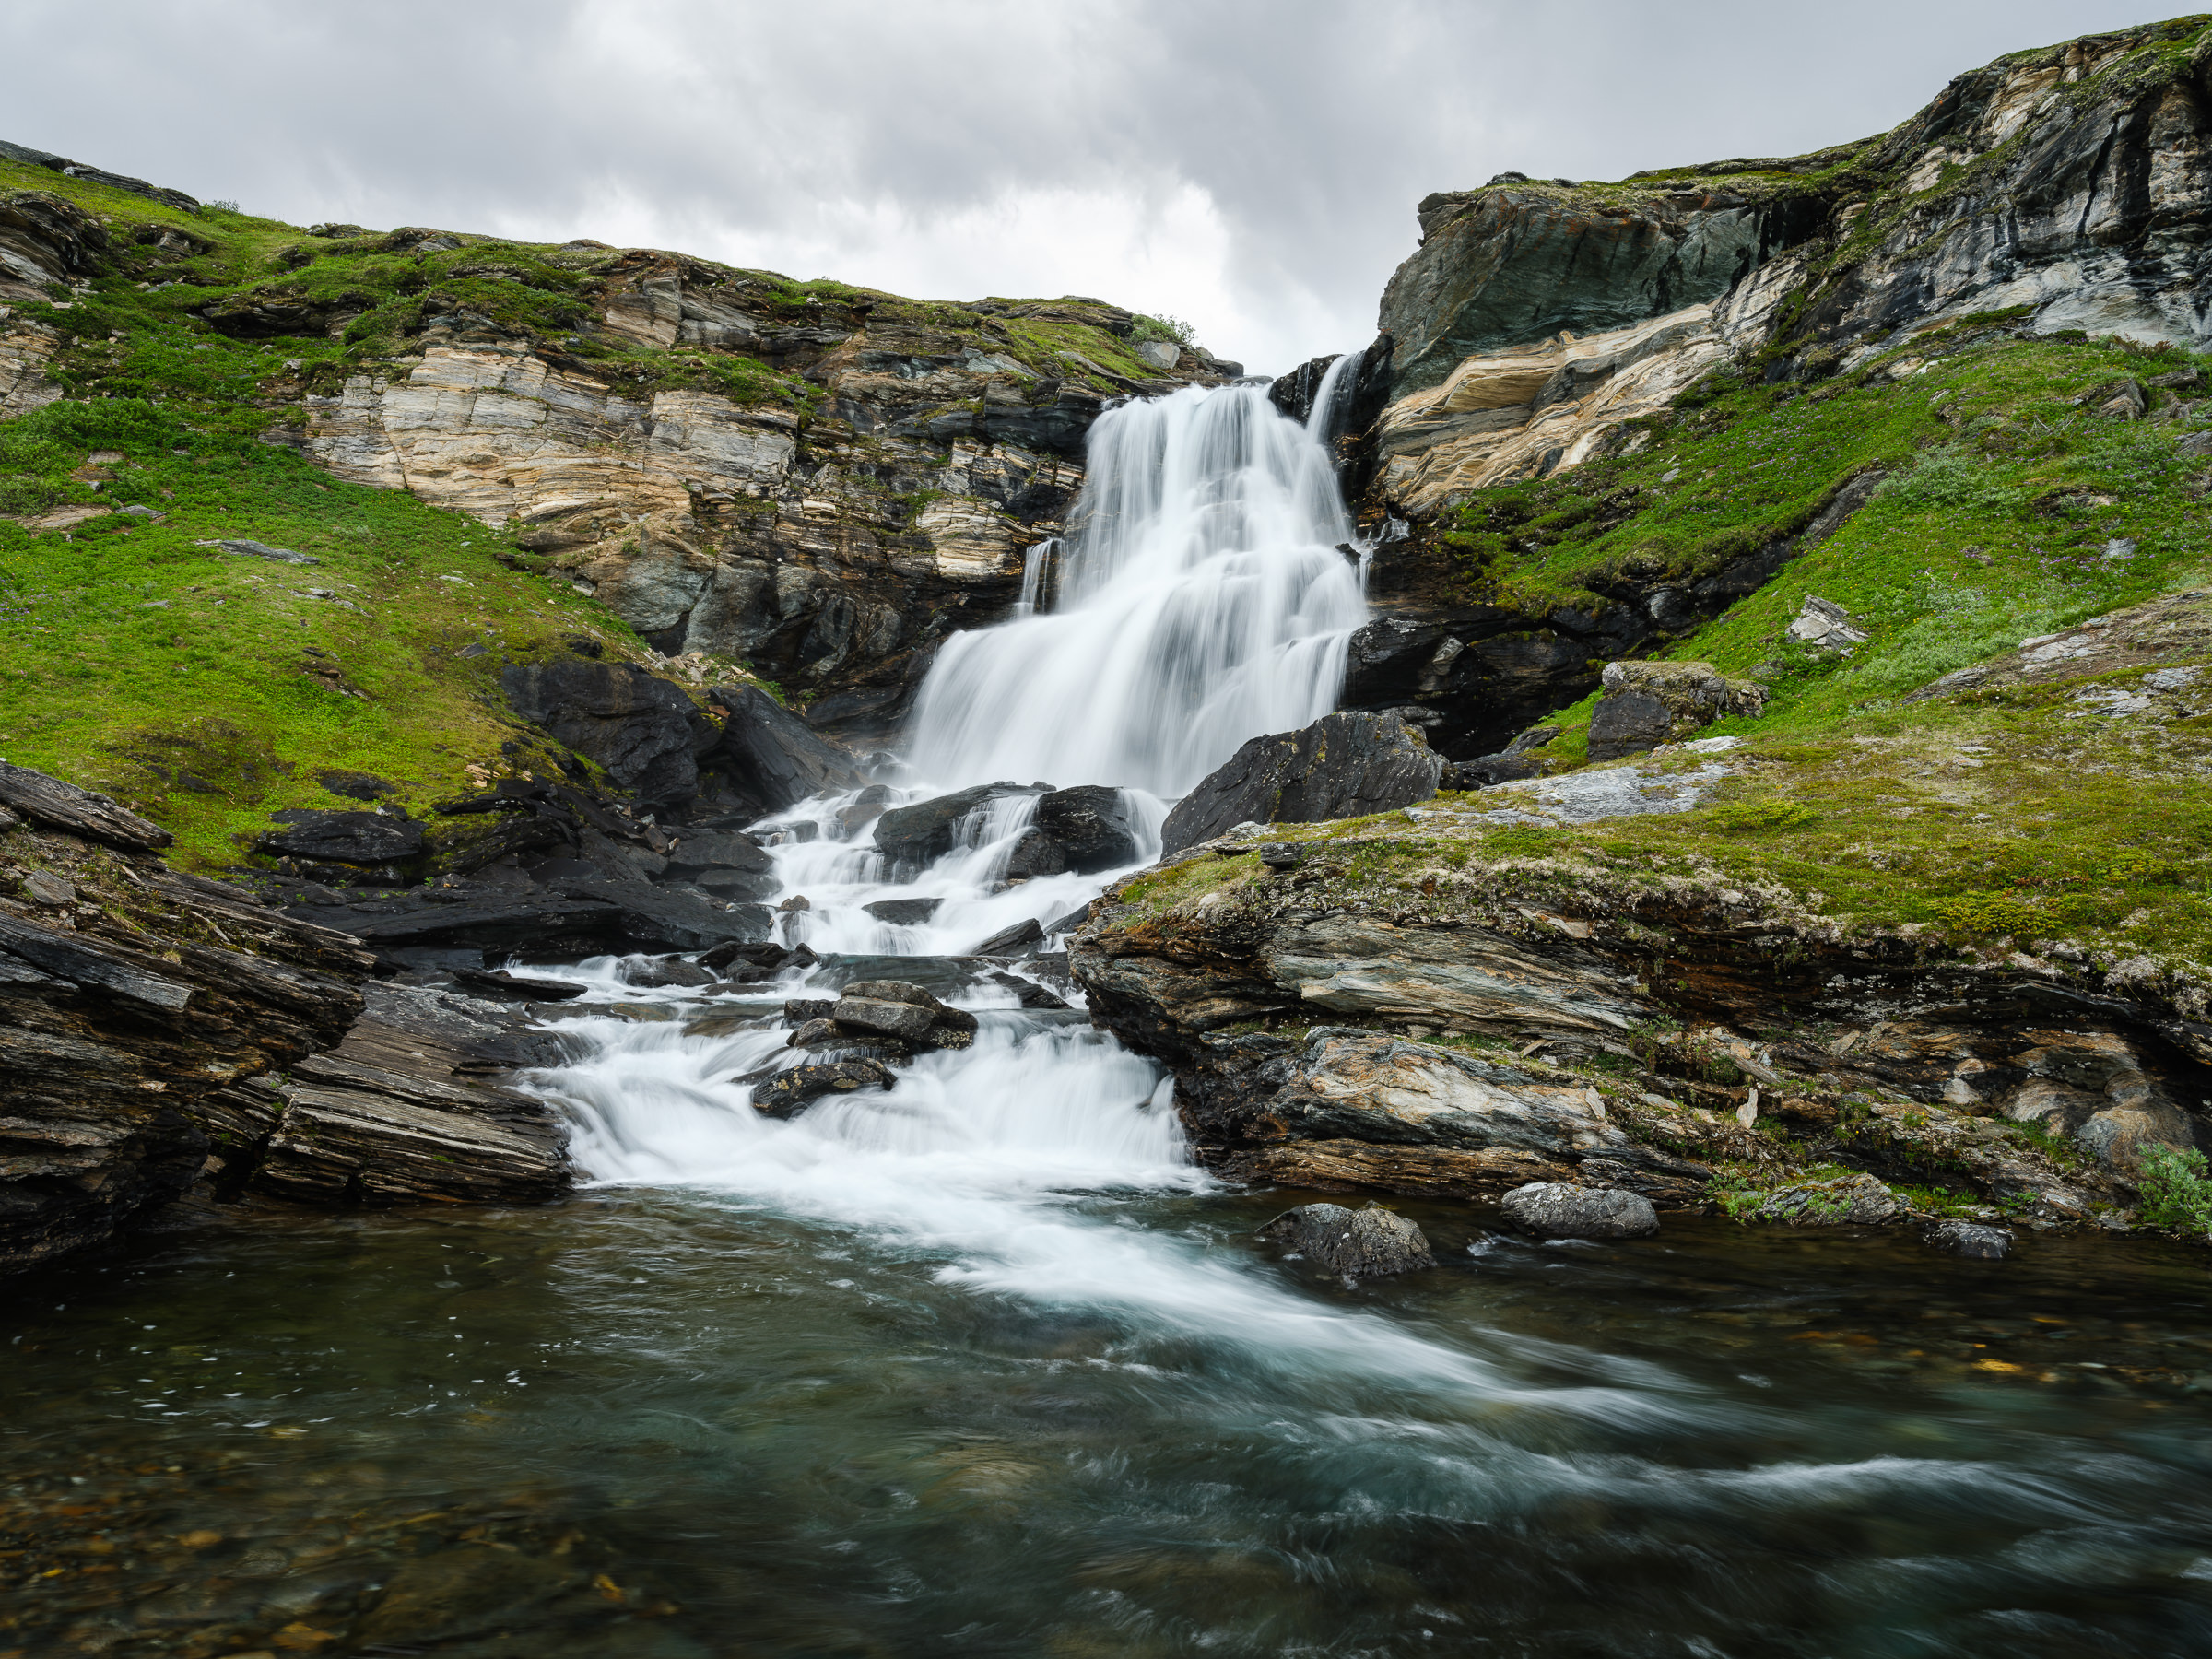 Waterfall in Padjelanta National Park.